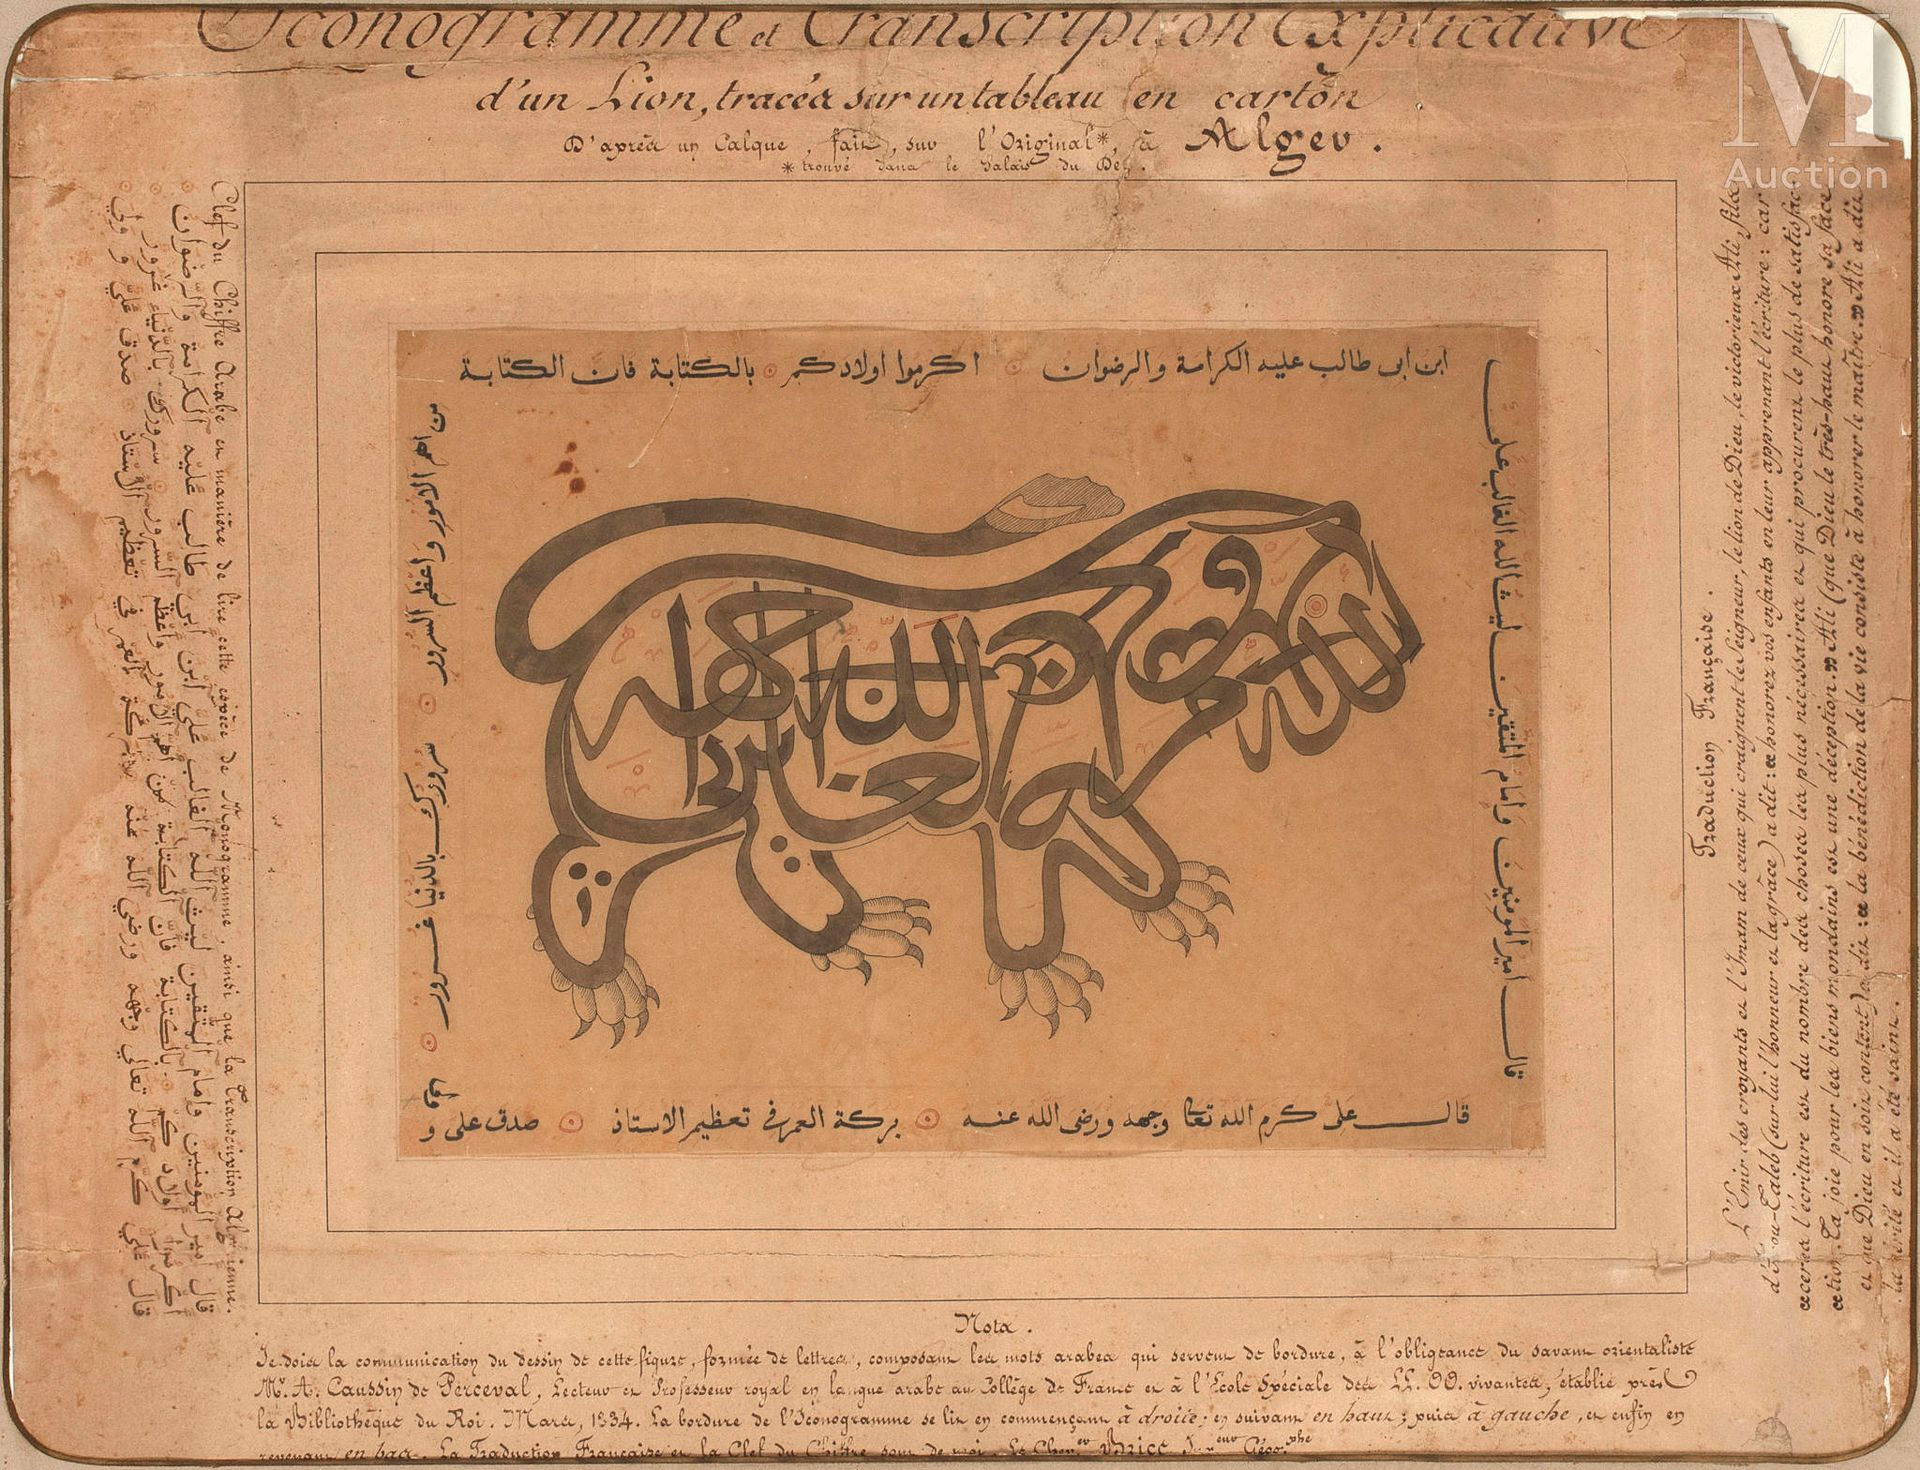 Calligraphie zoomorphe Algerien, 19. Jahrhundert
In der Mitte ein in arabischen &hellip;